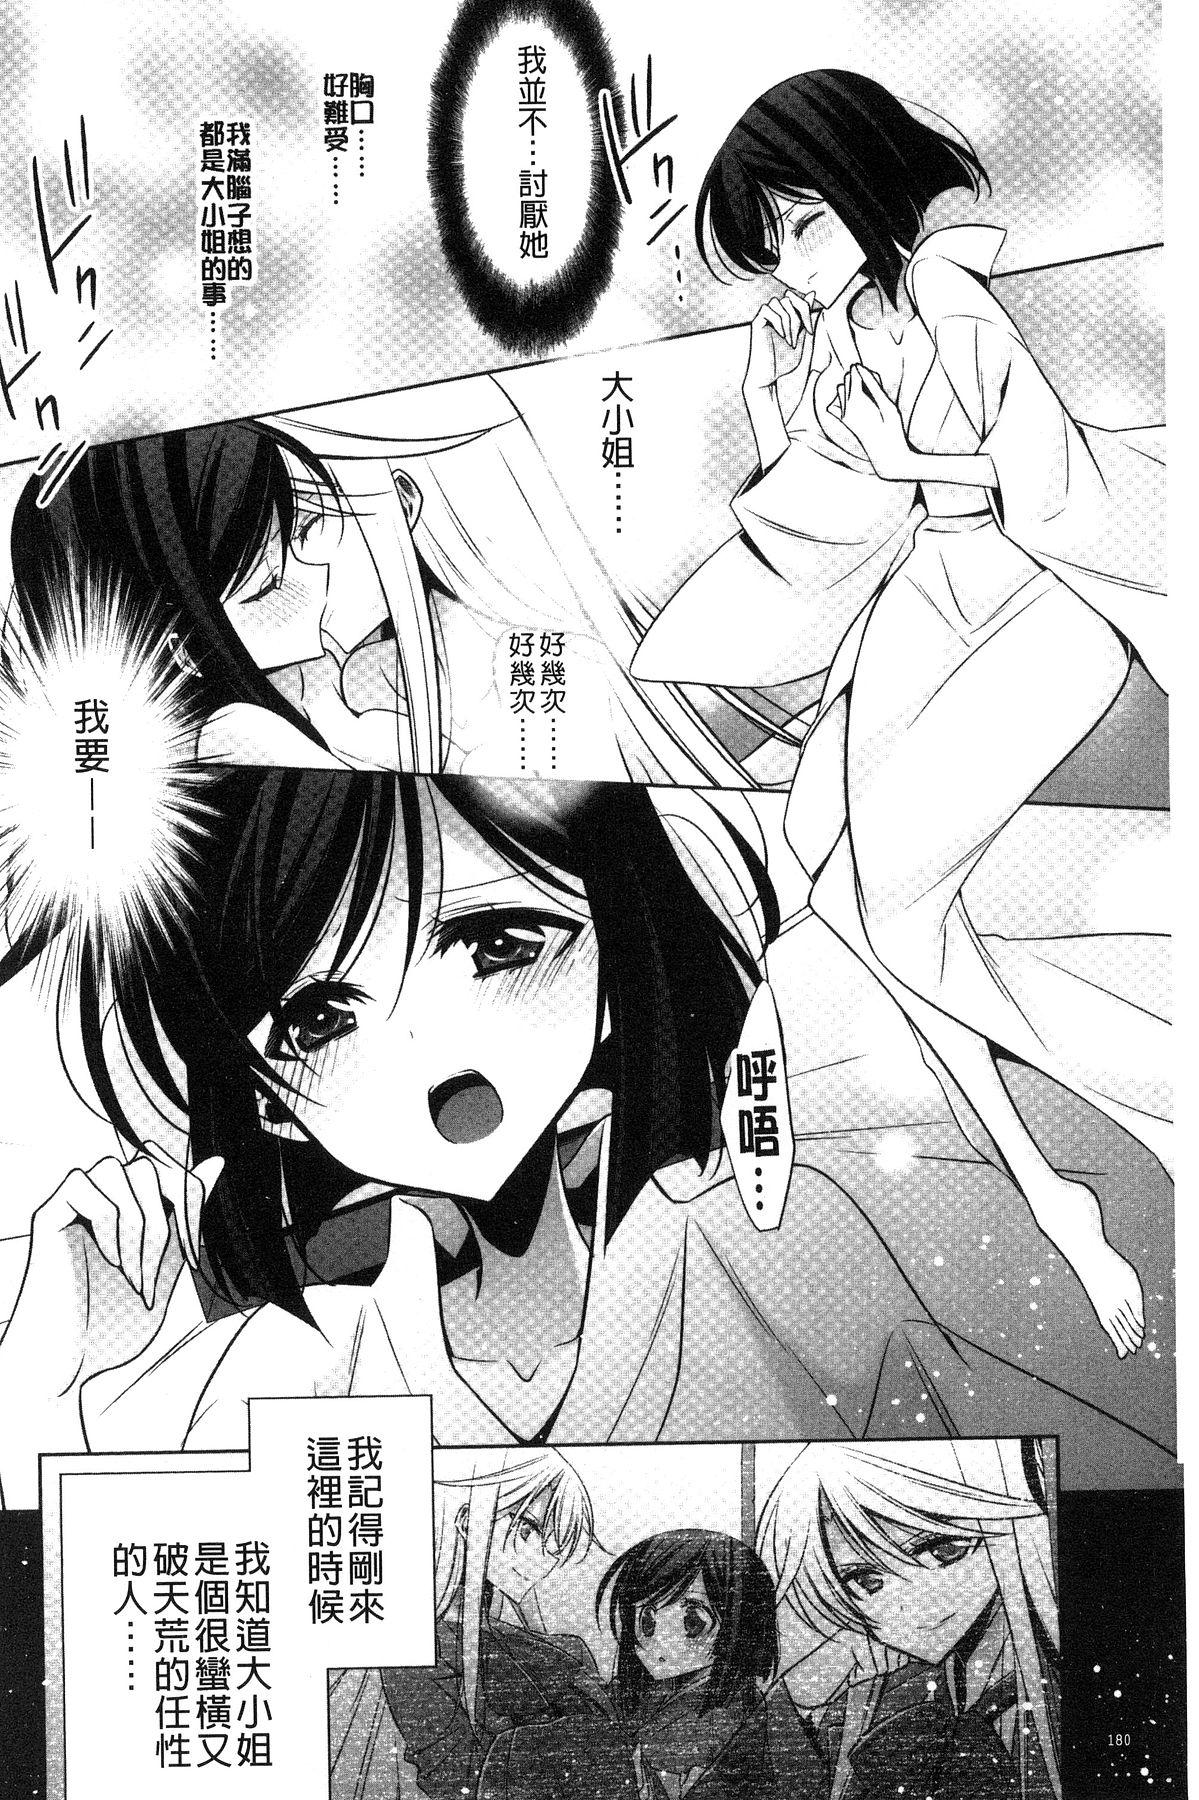 Kanojo to Watashi no Himitsu no Koi - She falls in love with her 181